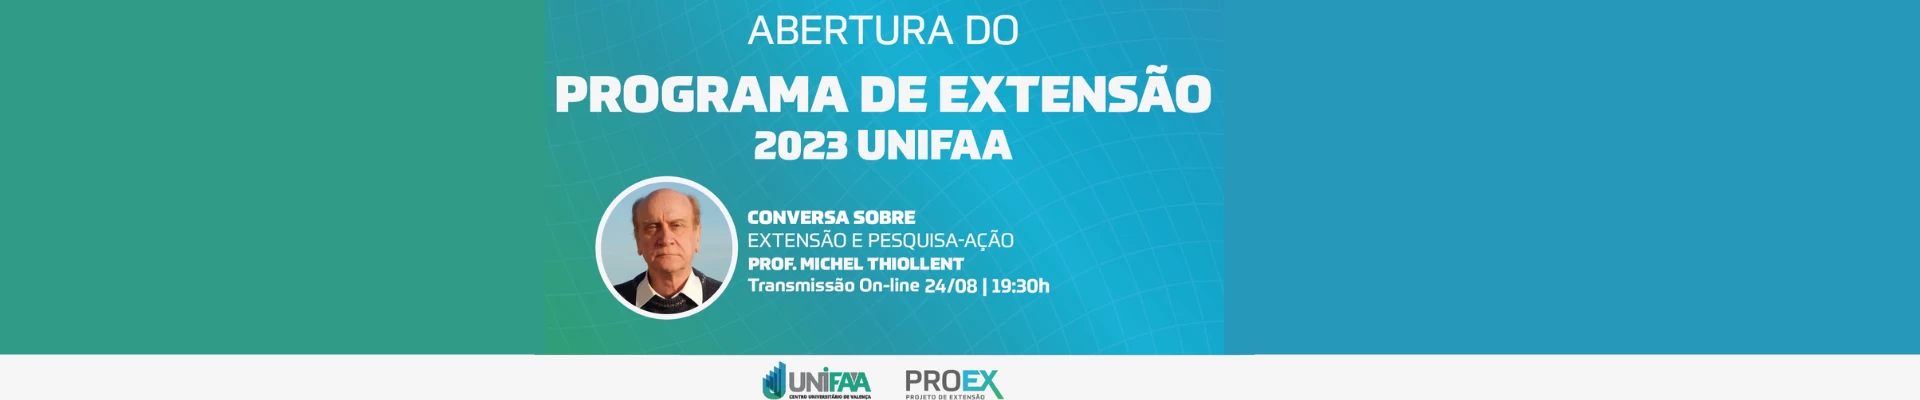 Programa de Extensão 2023 do UNIFAA.